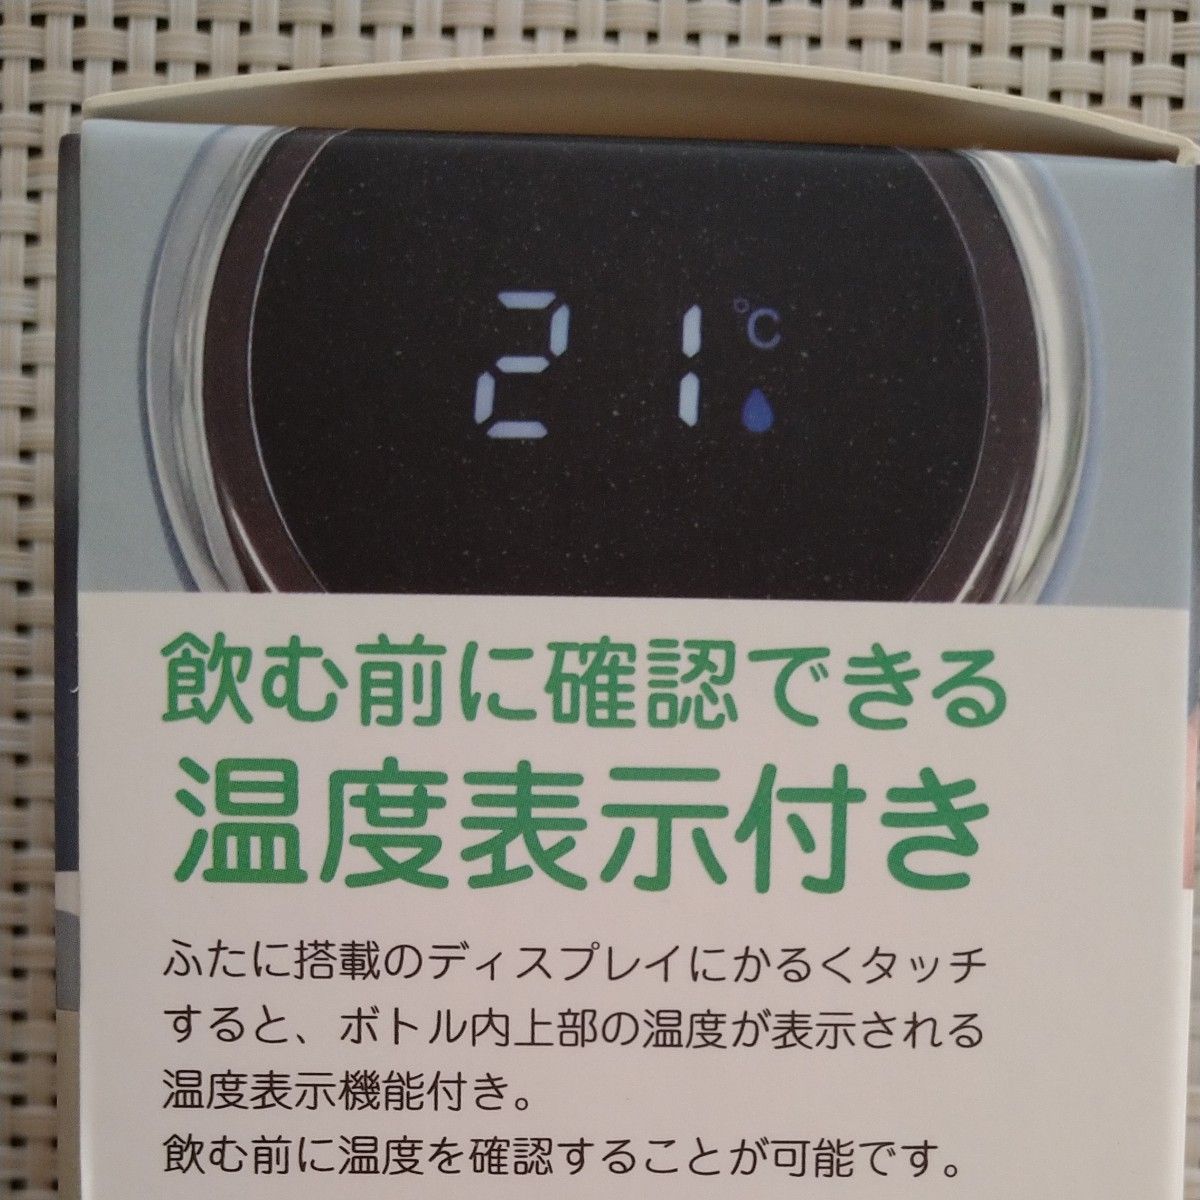 エスアイエス 温度表示付き保冷保温マグボトル アイボリー 6.5×7.5×20.5cm